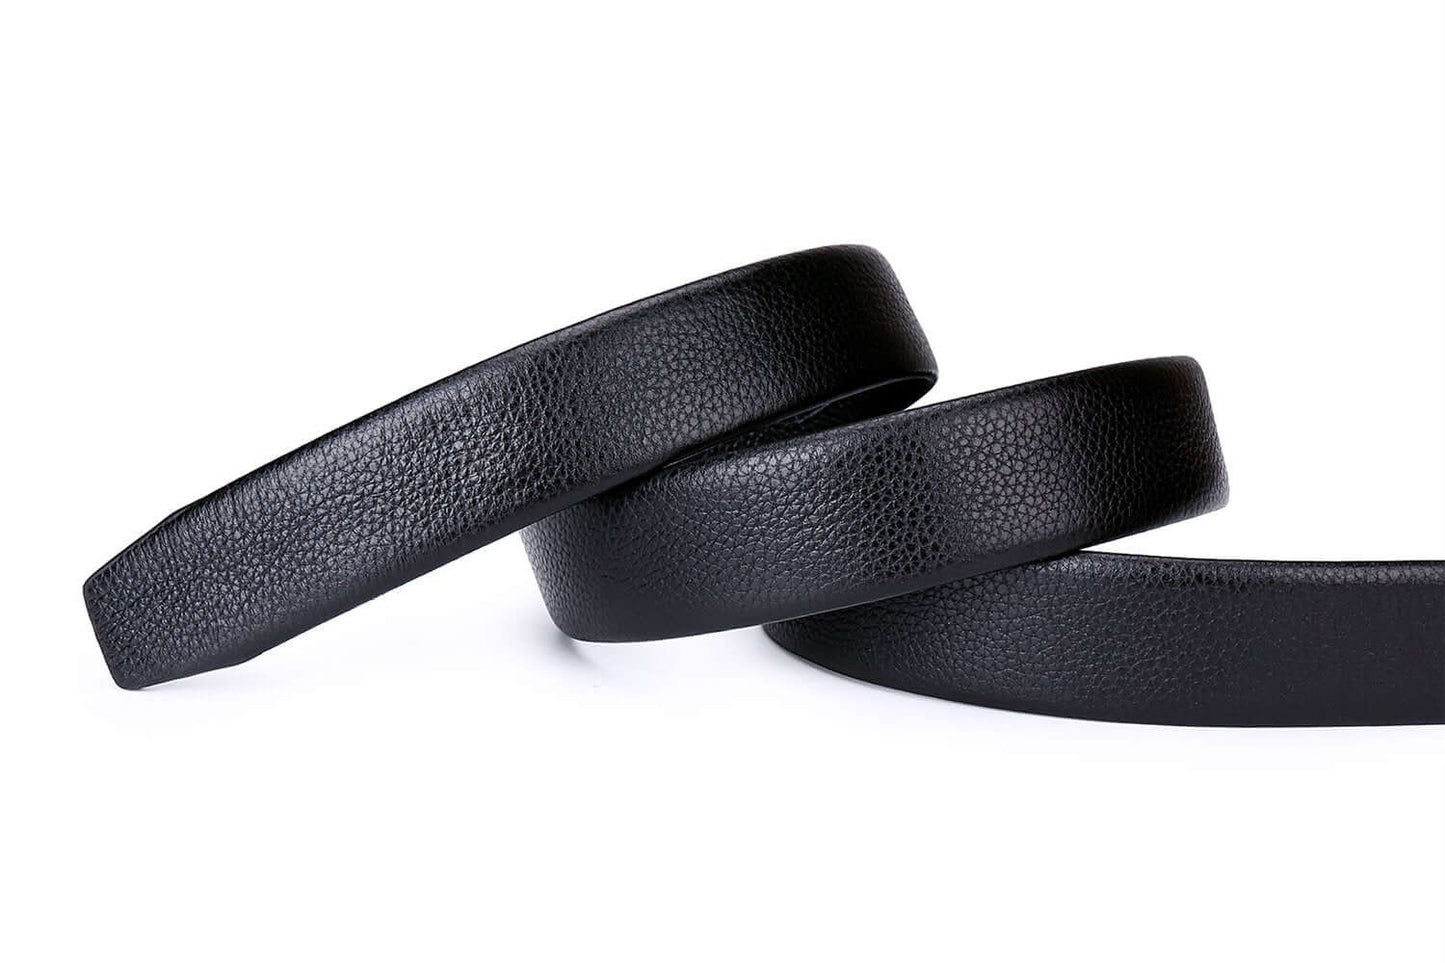 Men's Ratchet Belt with Genuine Leather, Slide Belt for men 1 3/8 inches Wide